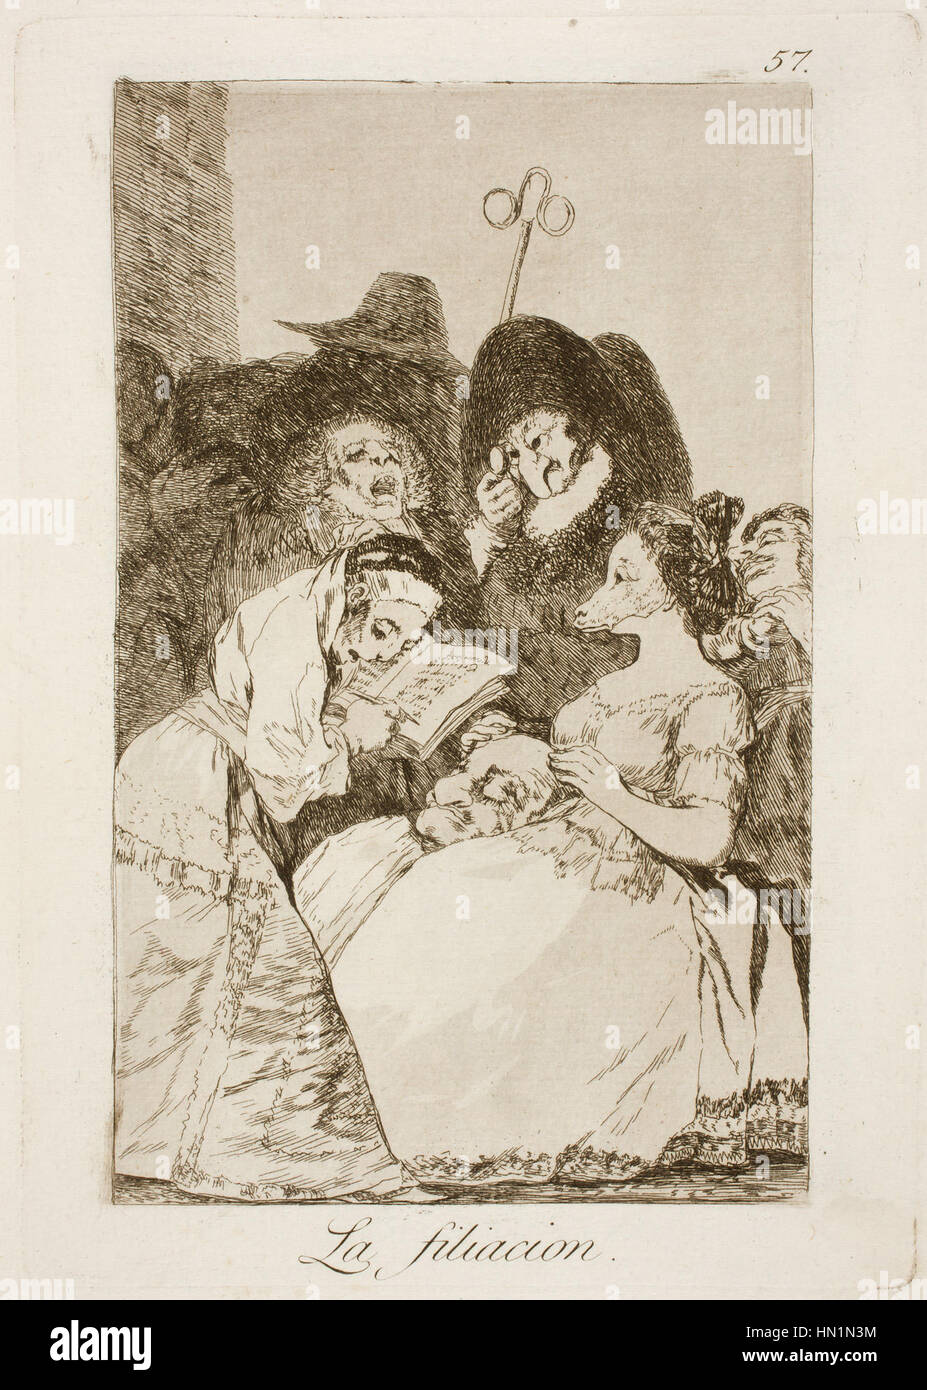 Museo del Prado - Goya - Caprichos - No. 57 - La filiacion Stock Photo